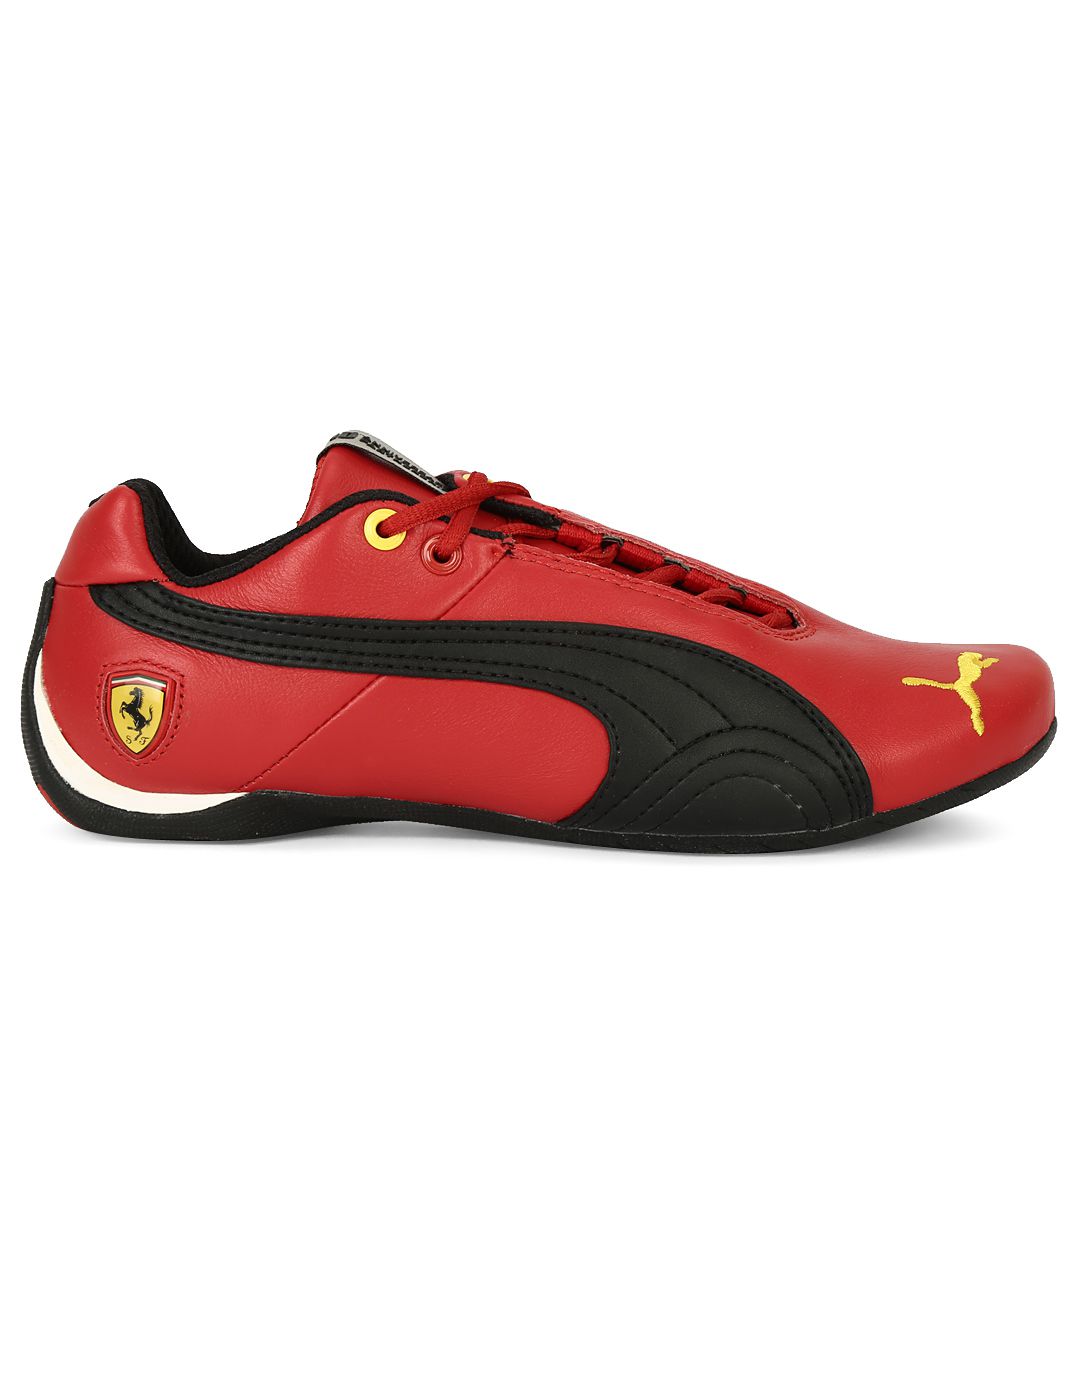 Puma Red Ferrari Casual Shoes Price in India- Buy Puma Red Ferrari ...